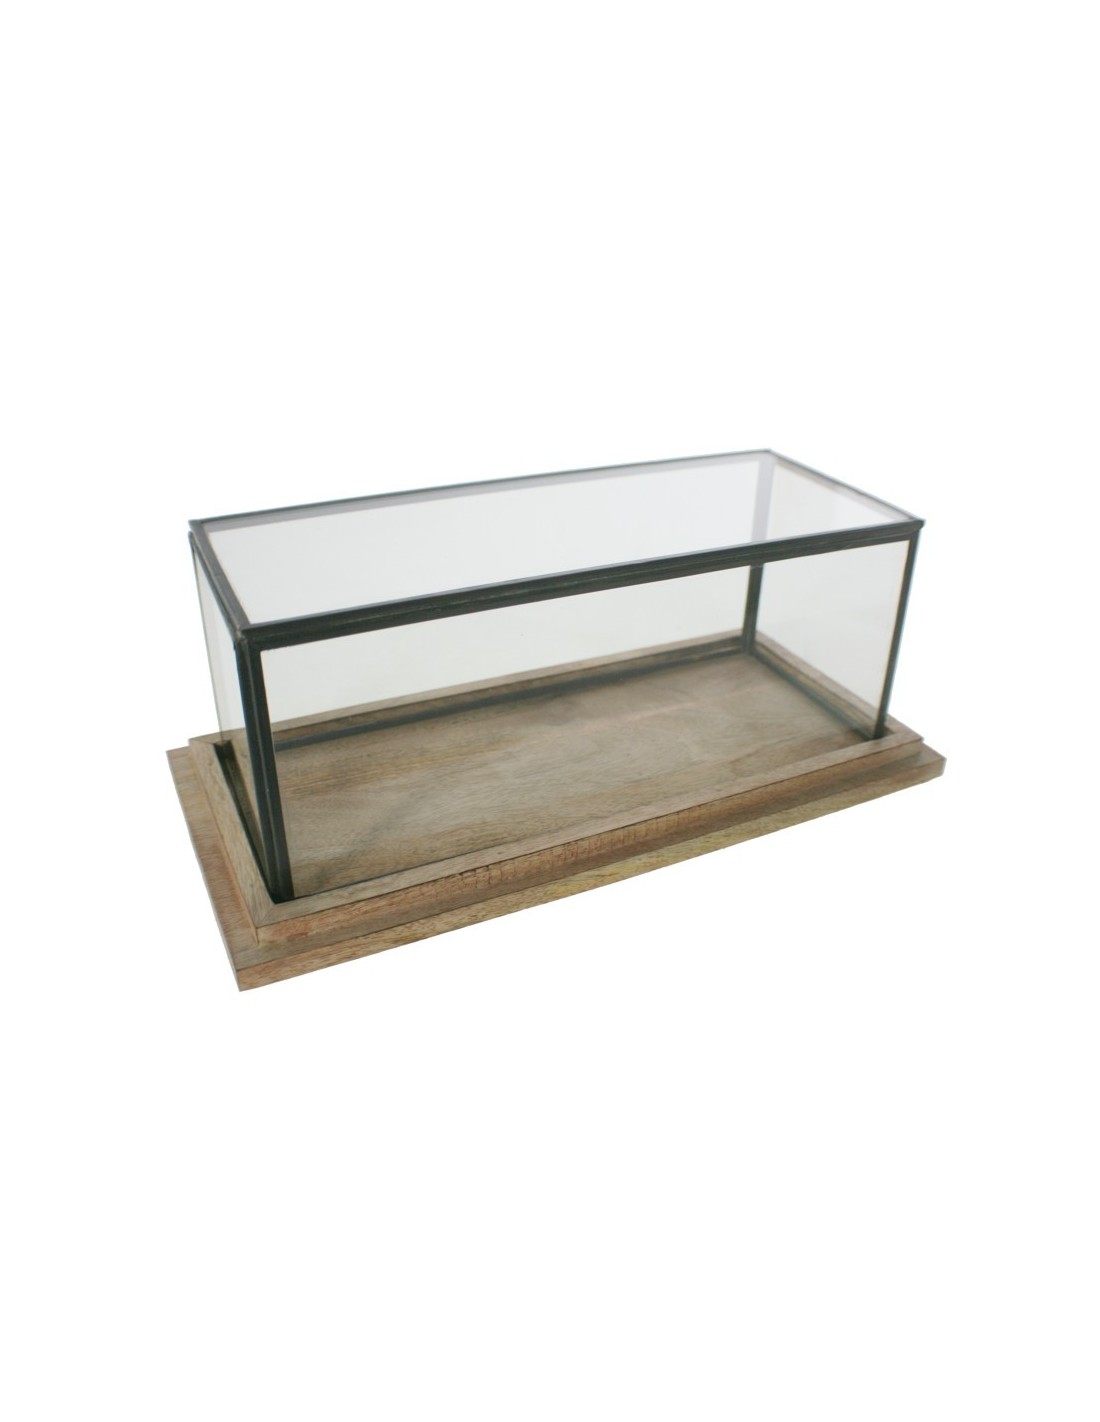 Urna de cristal rectangular baja perfil metálico base de madera para exposición de objetos decorativos